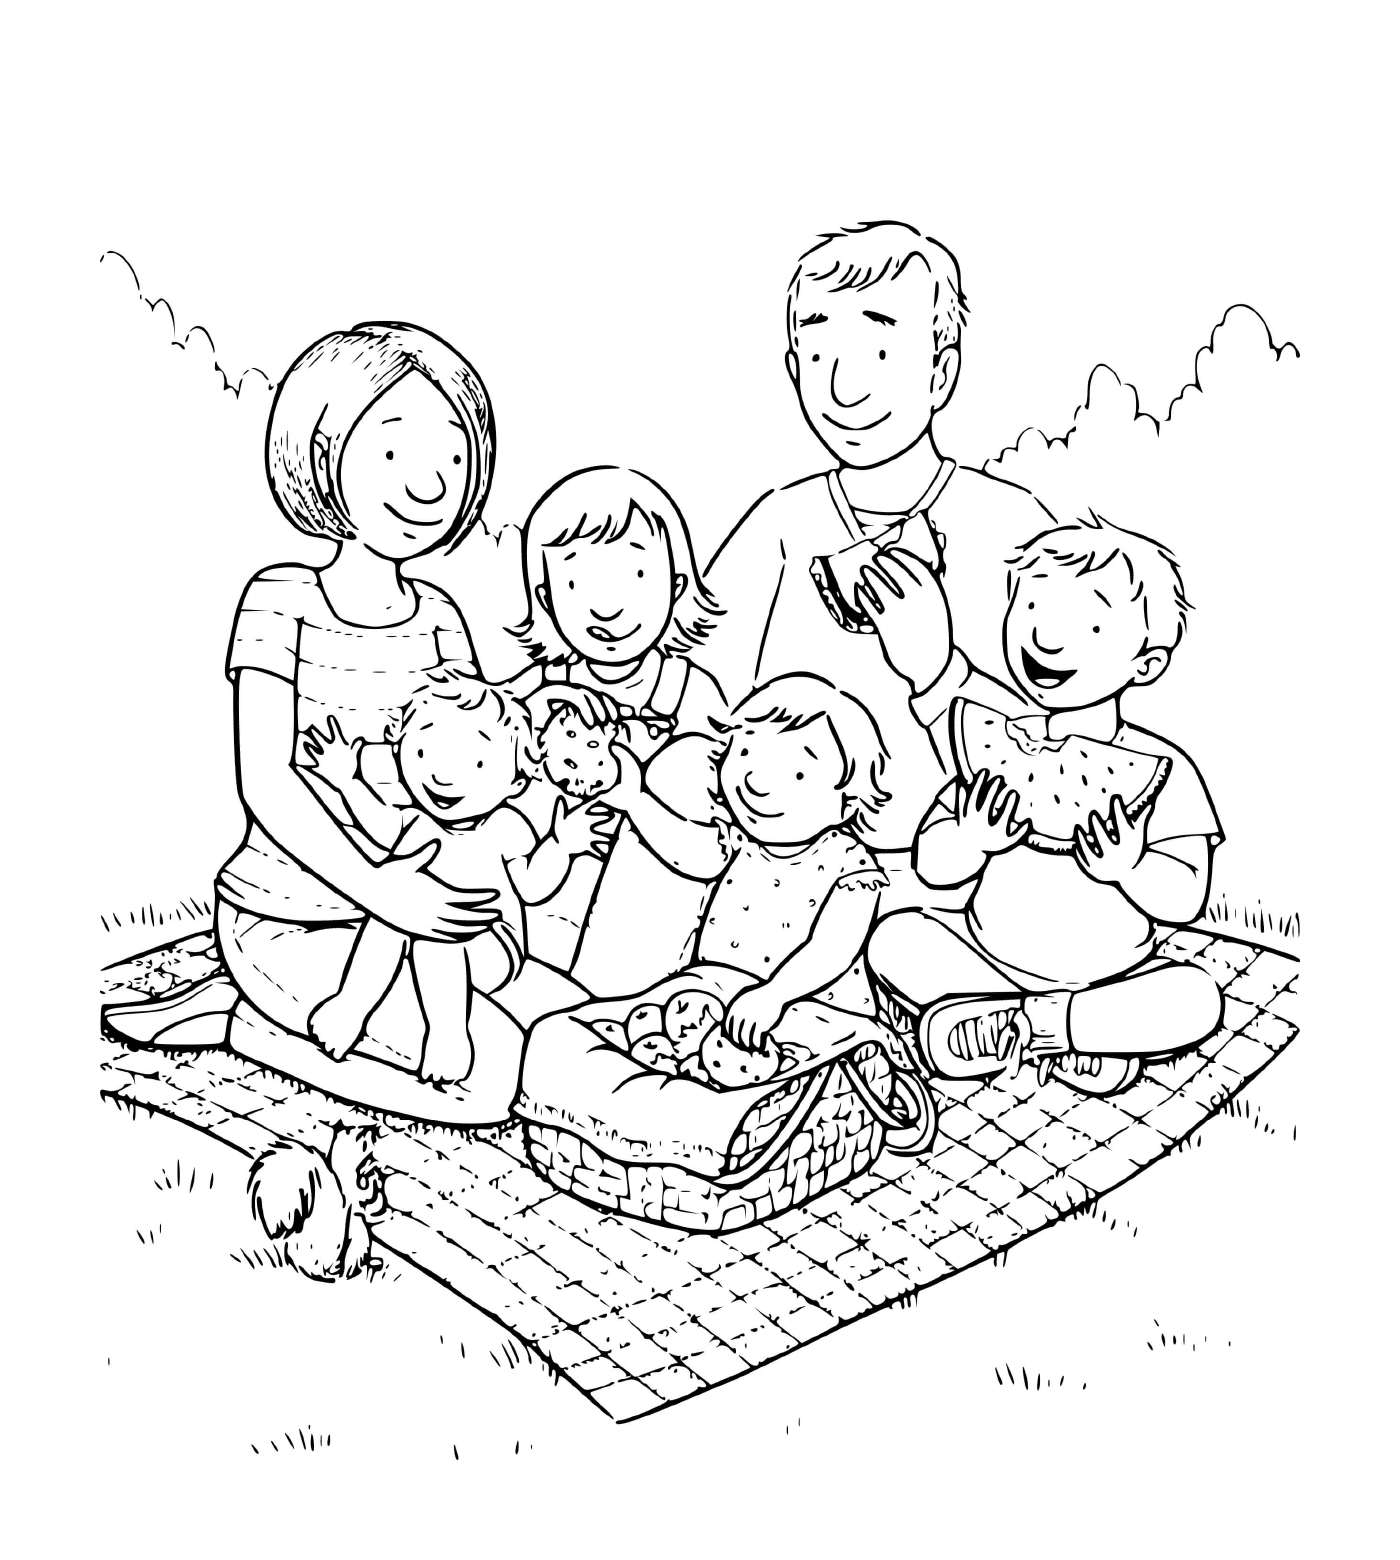  इन चार बच्चों का परिवार घास में एक चादर पर फैला हुआ है 